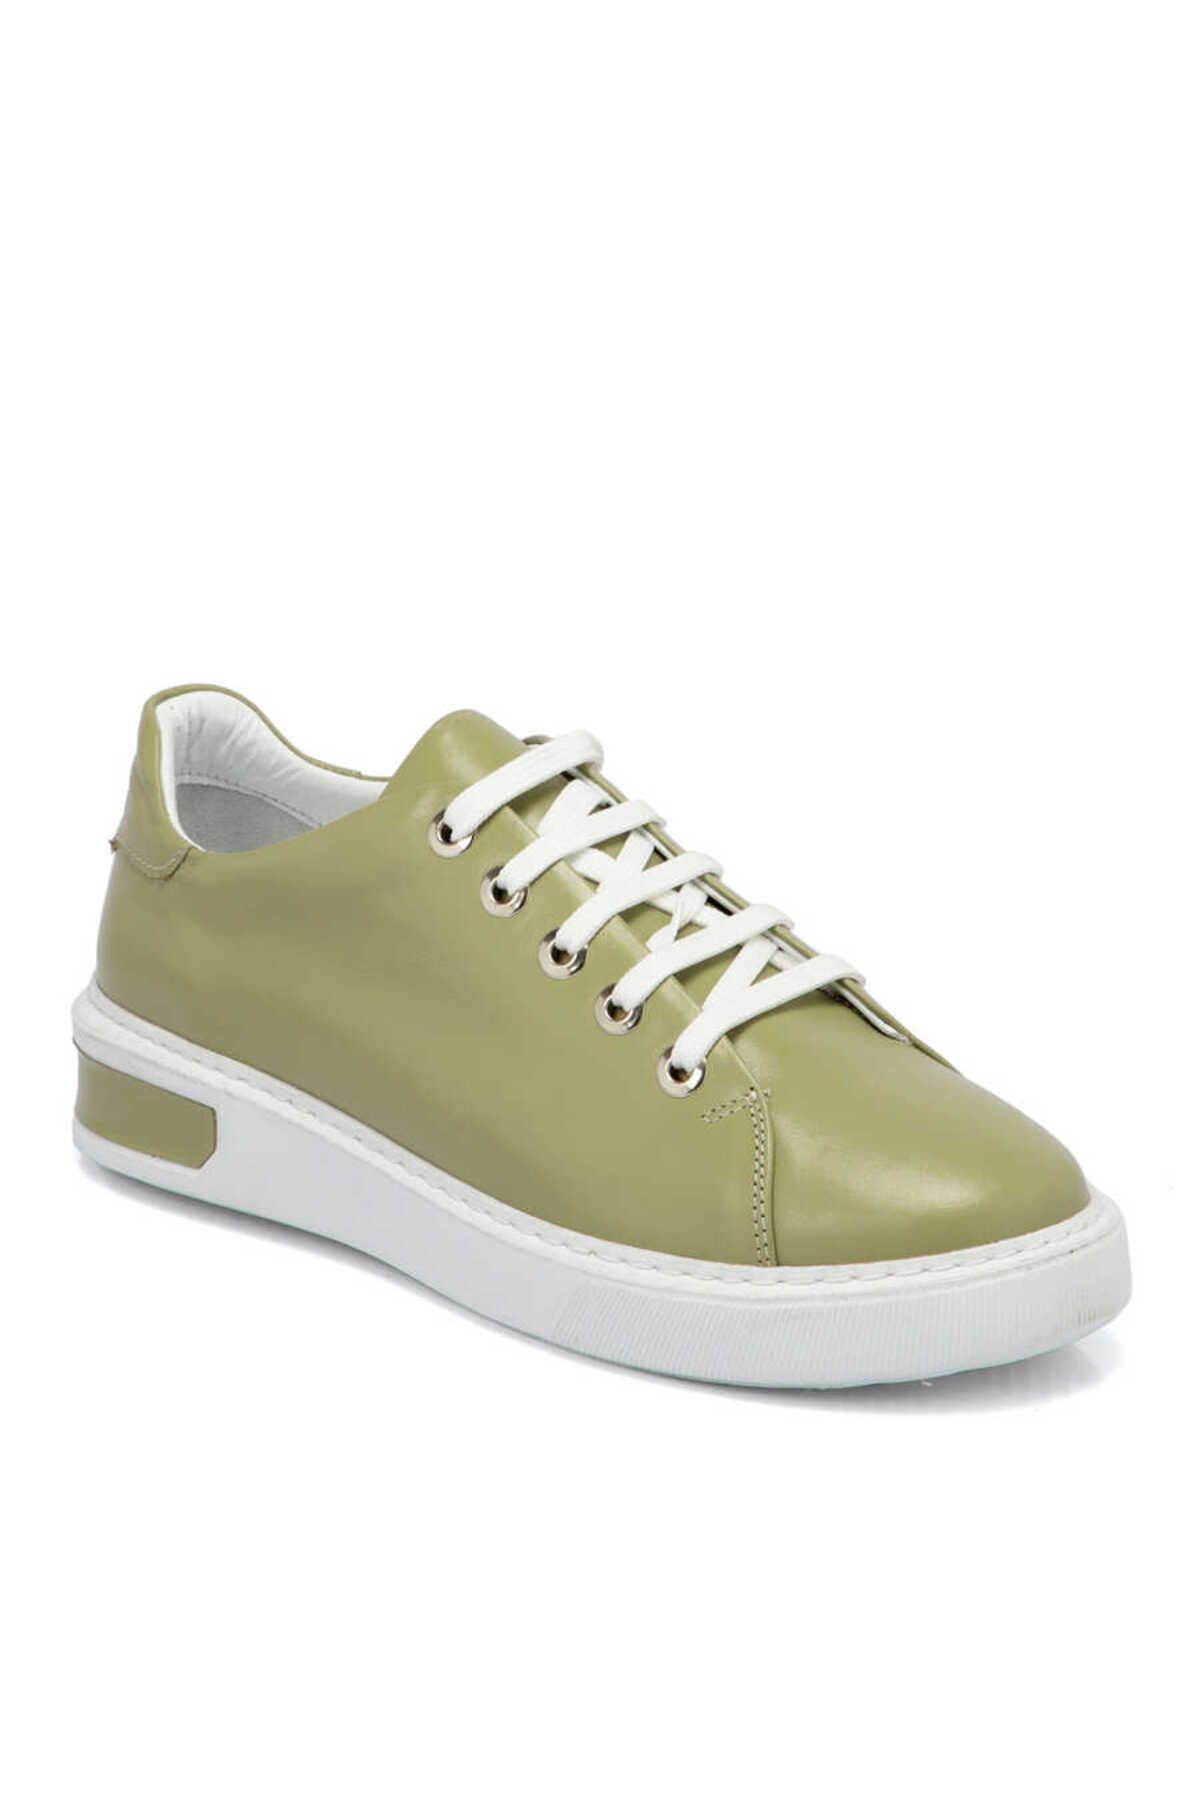 Tergan Yeşil Deri Kadın Sneaker - K23I1AY66636-G81